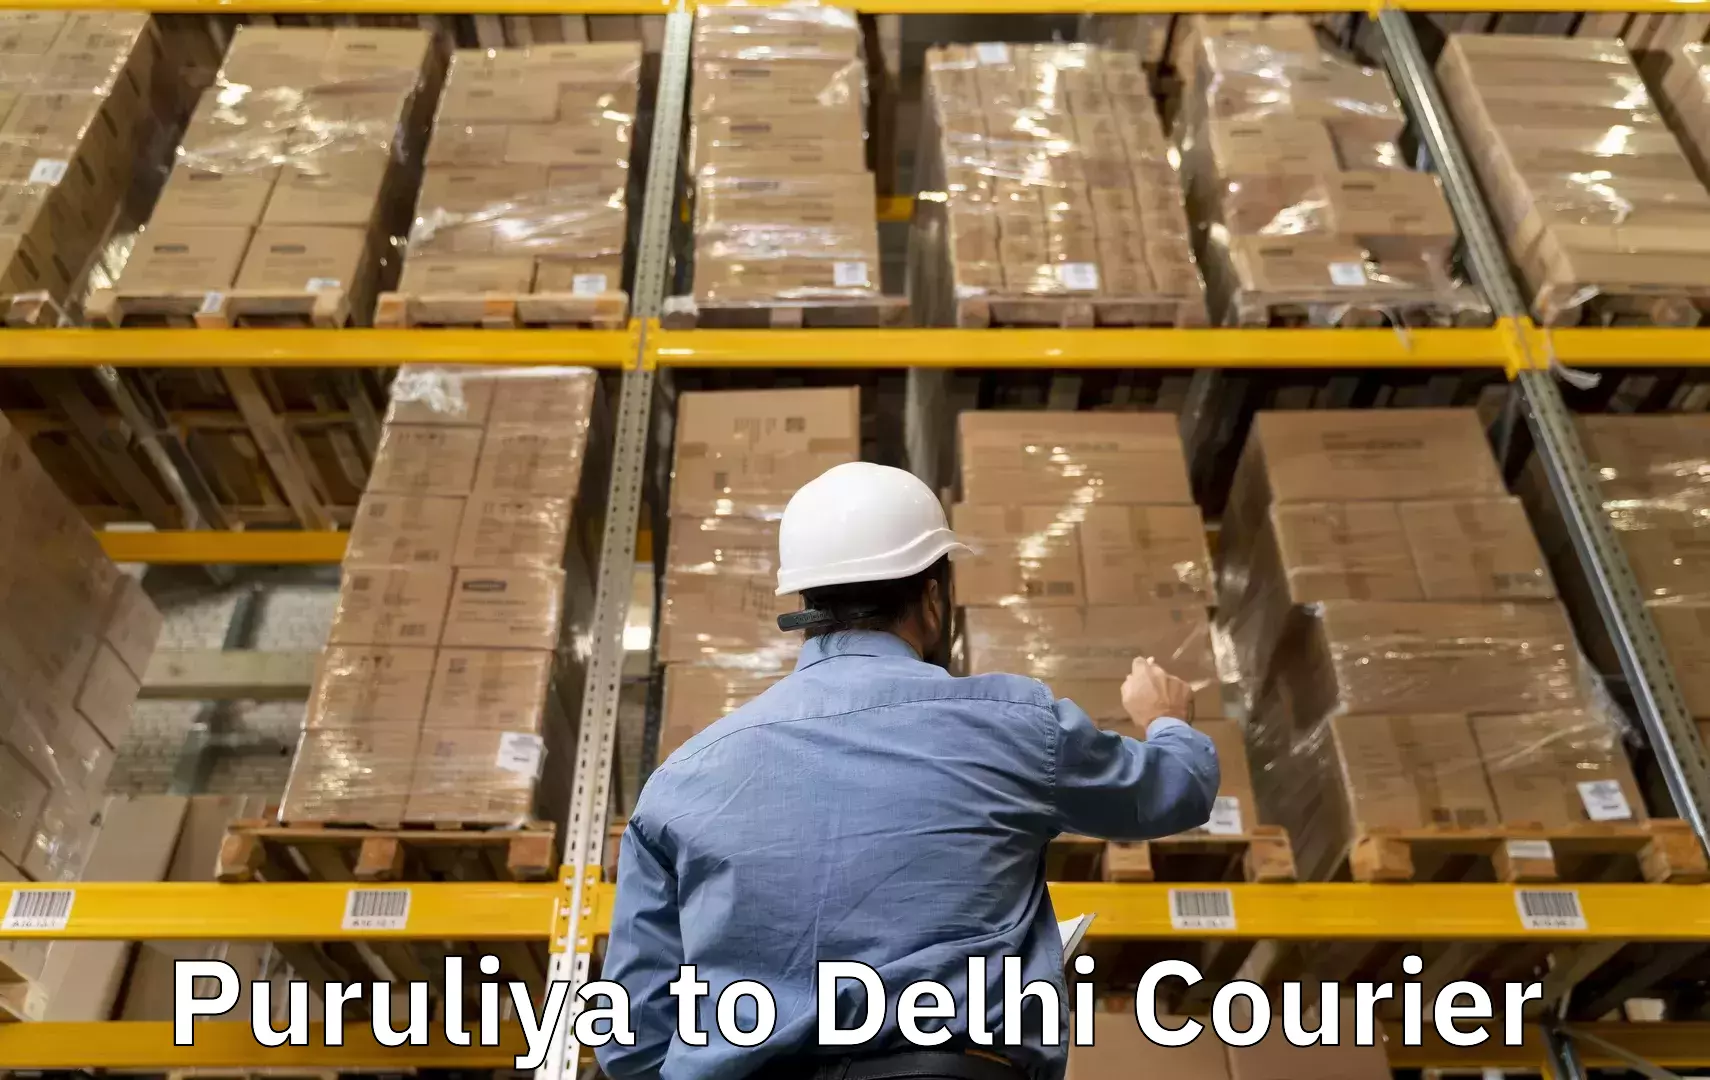 Luggage transfer service Puruliya to East Delhi